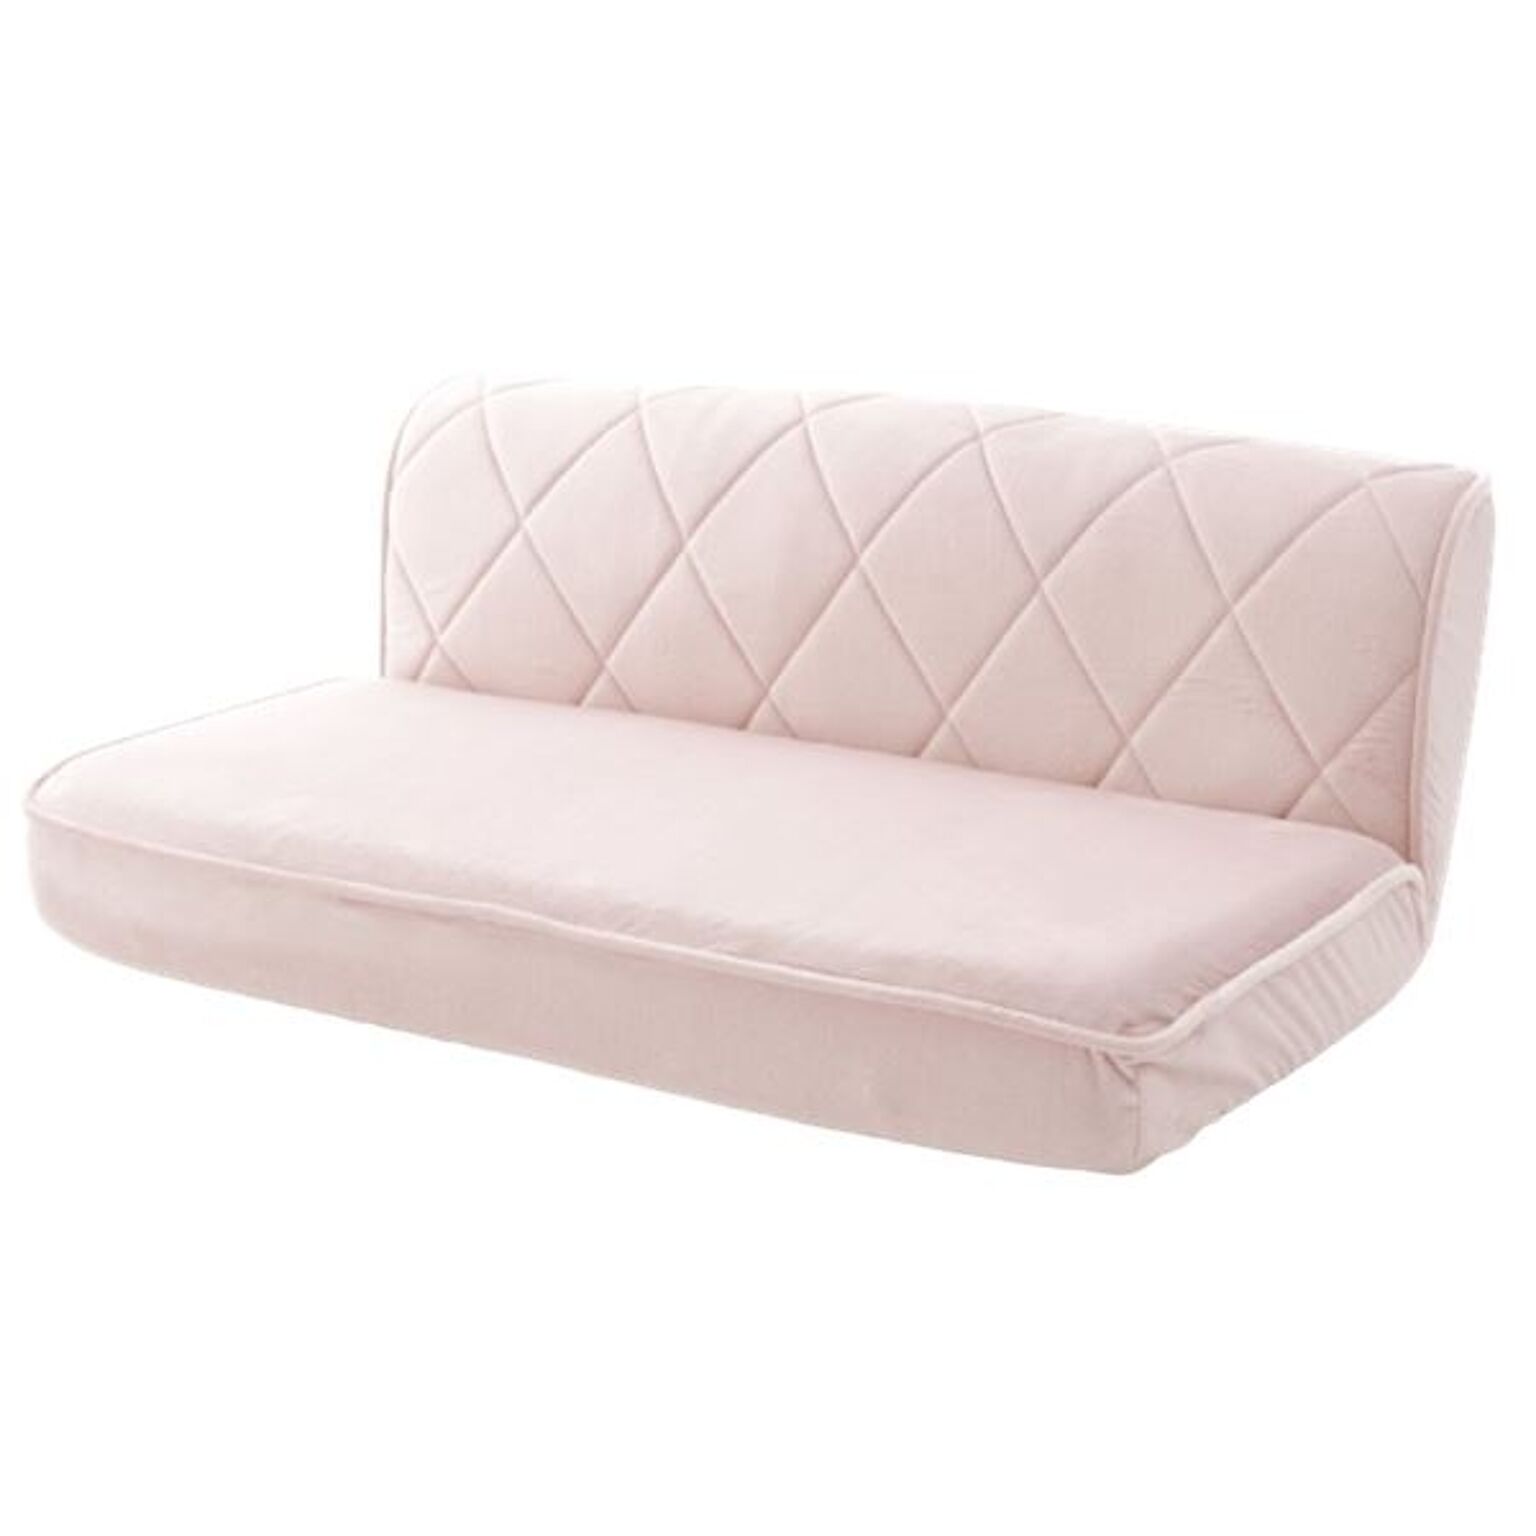 ローソファー 座椅子 幅約99cm W ピンク スチールパイプ ポケットコイルスプリング ウレタンフォーム 日本製 リビング